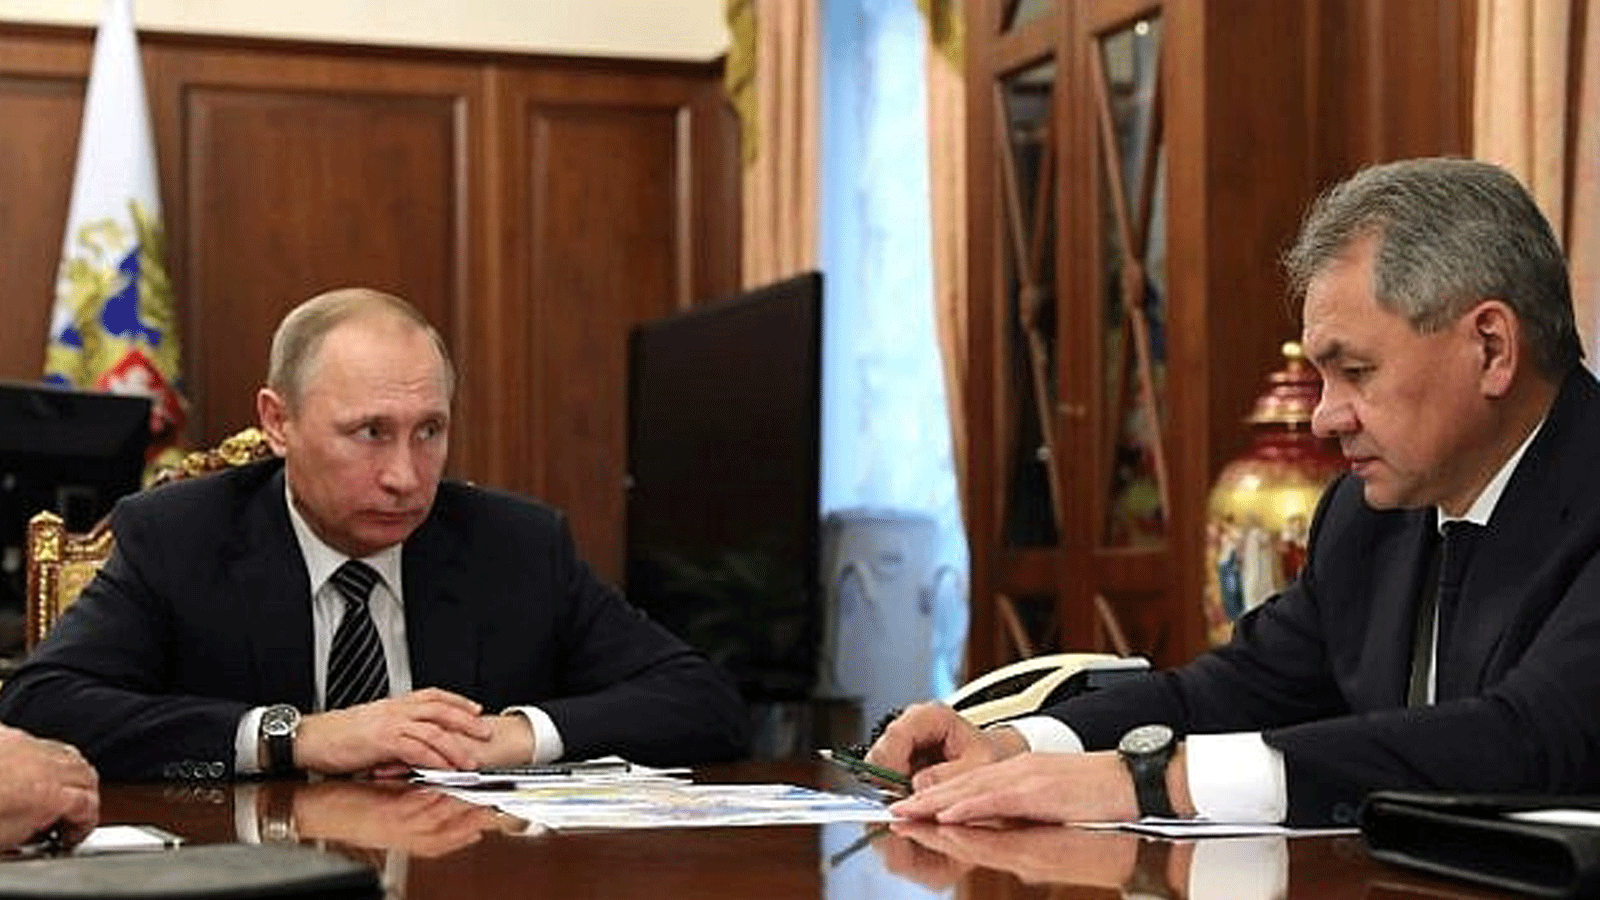 الرئيس الروسي فلاديمير بوتين (يسار) يتحدث مع وزير الدفاع سيرغي شويغو خلال اجتماع في الكرملين\ موسكو